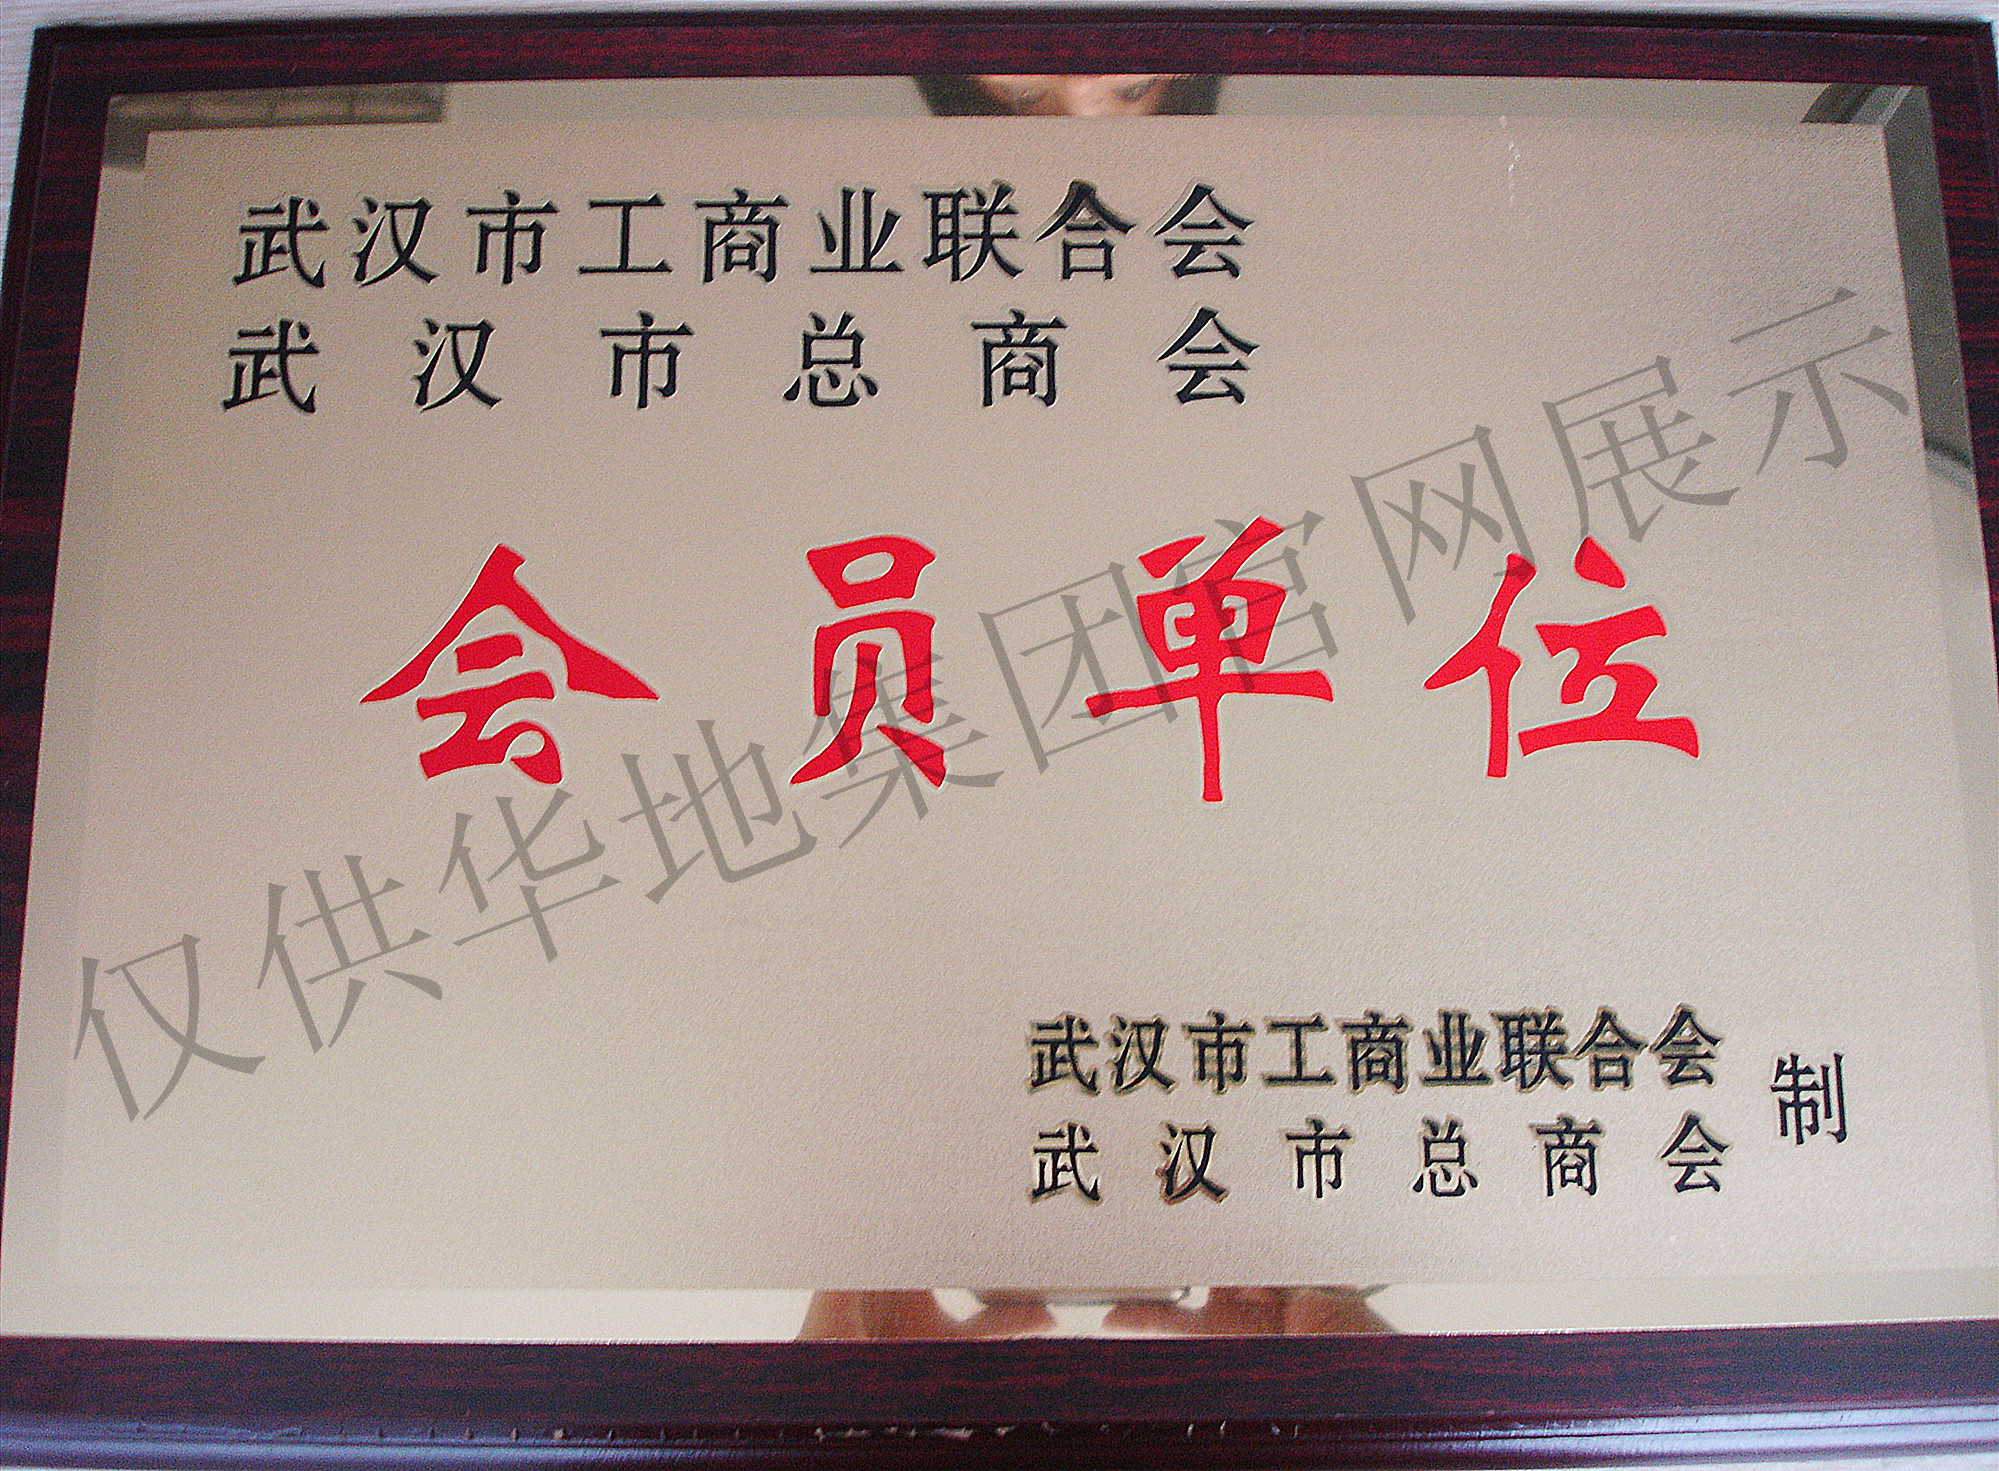  武汉市总商会会员单位